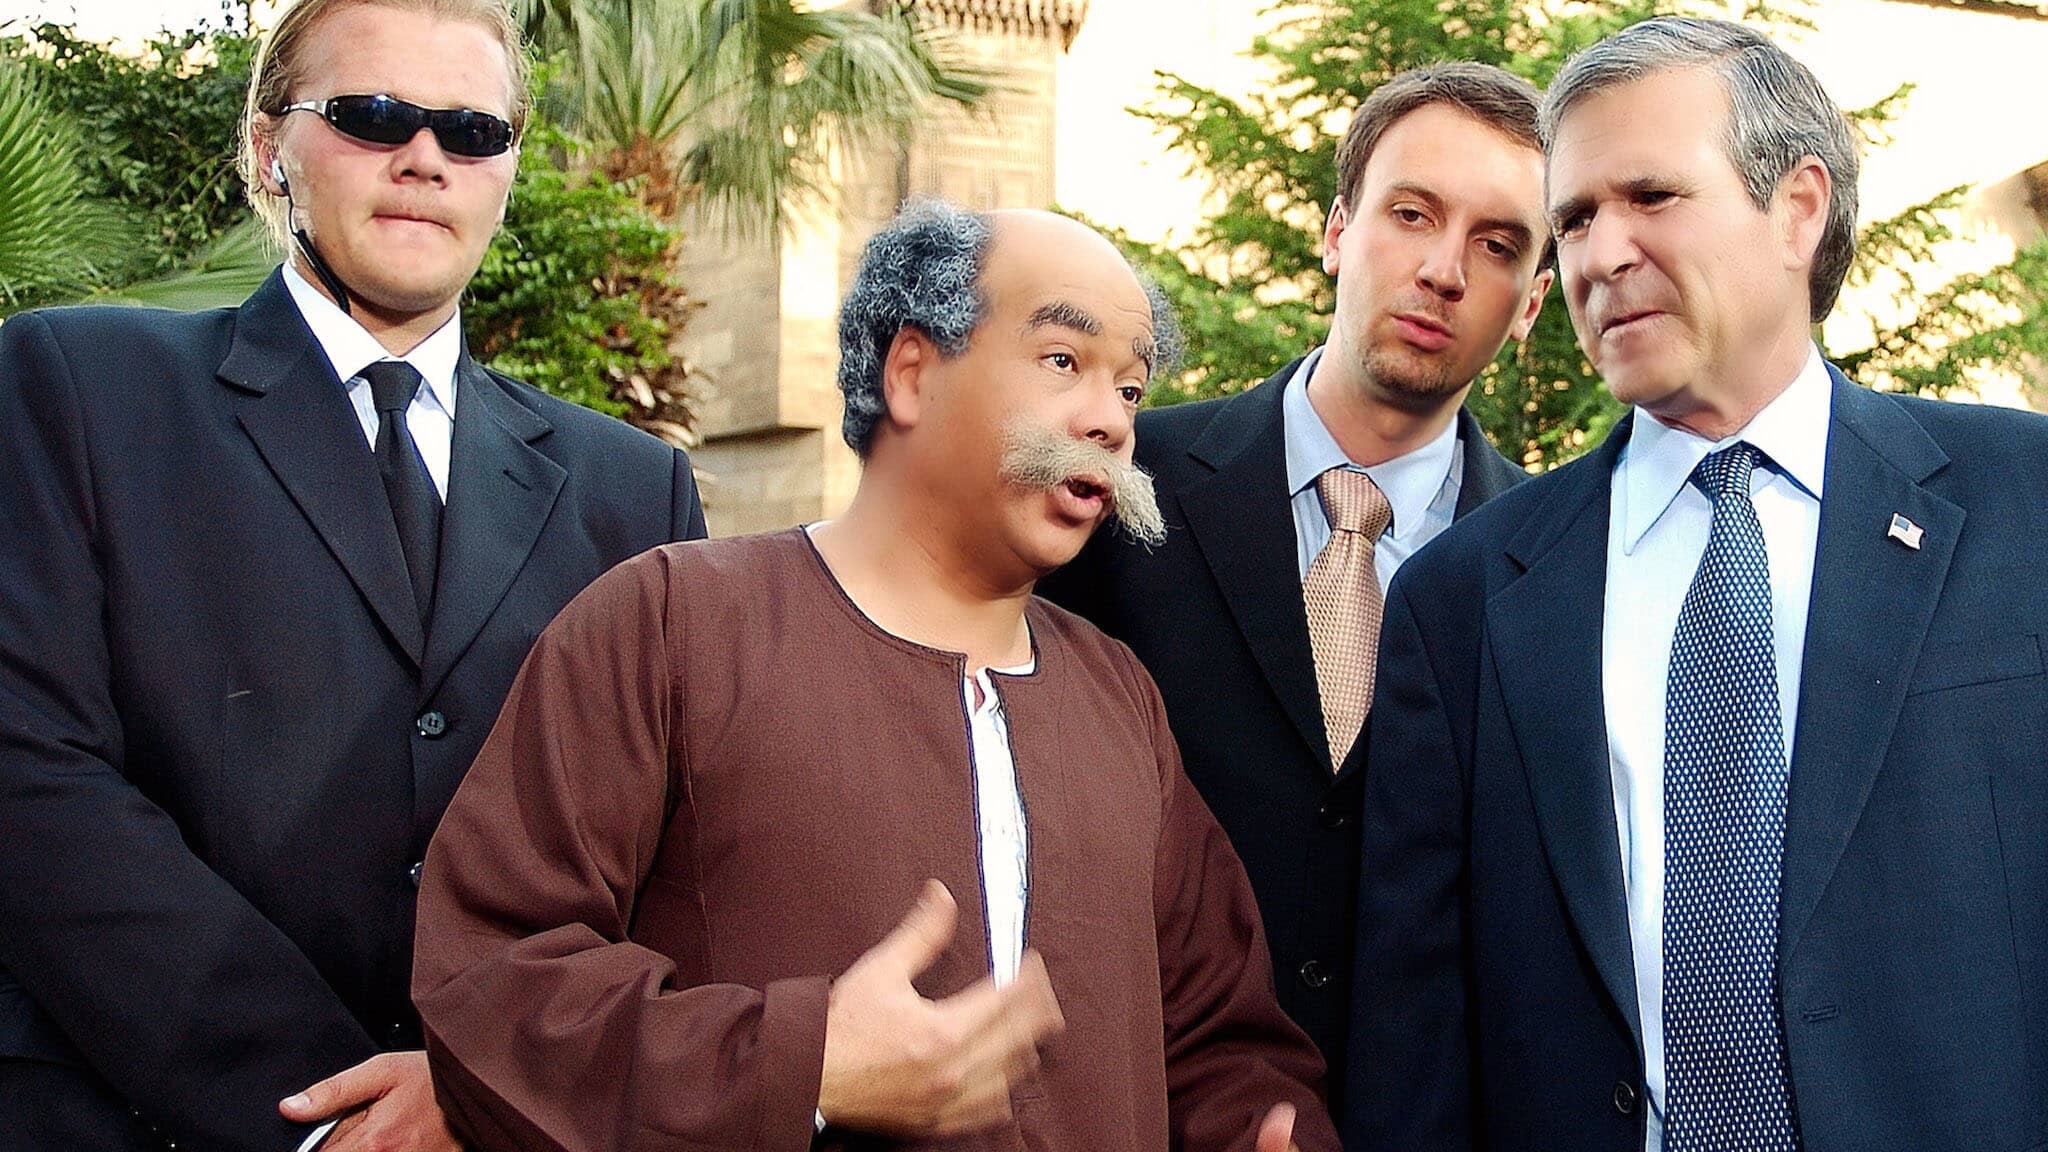 فيلم معلش احنا بنتبهدل 2005